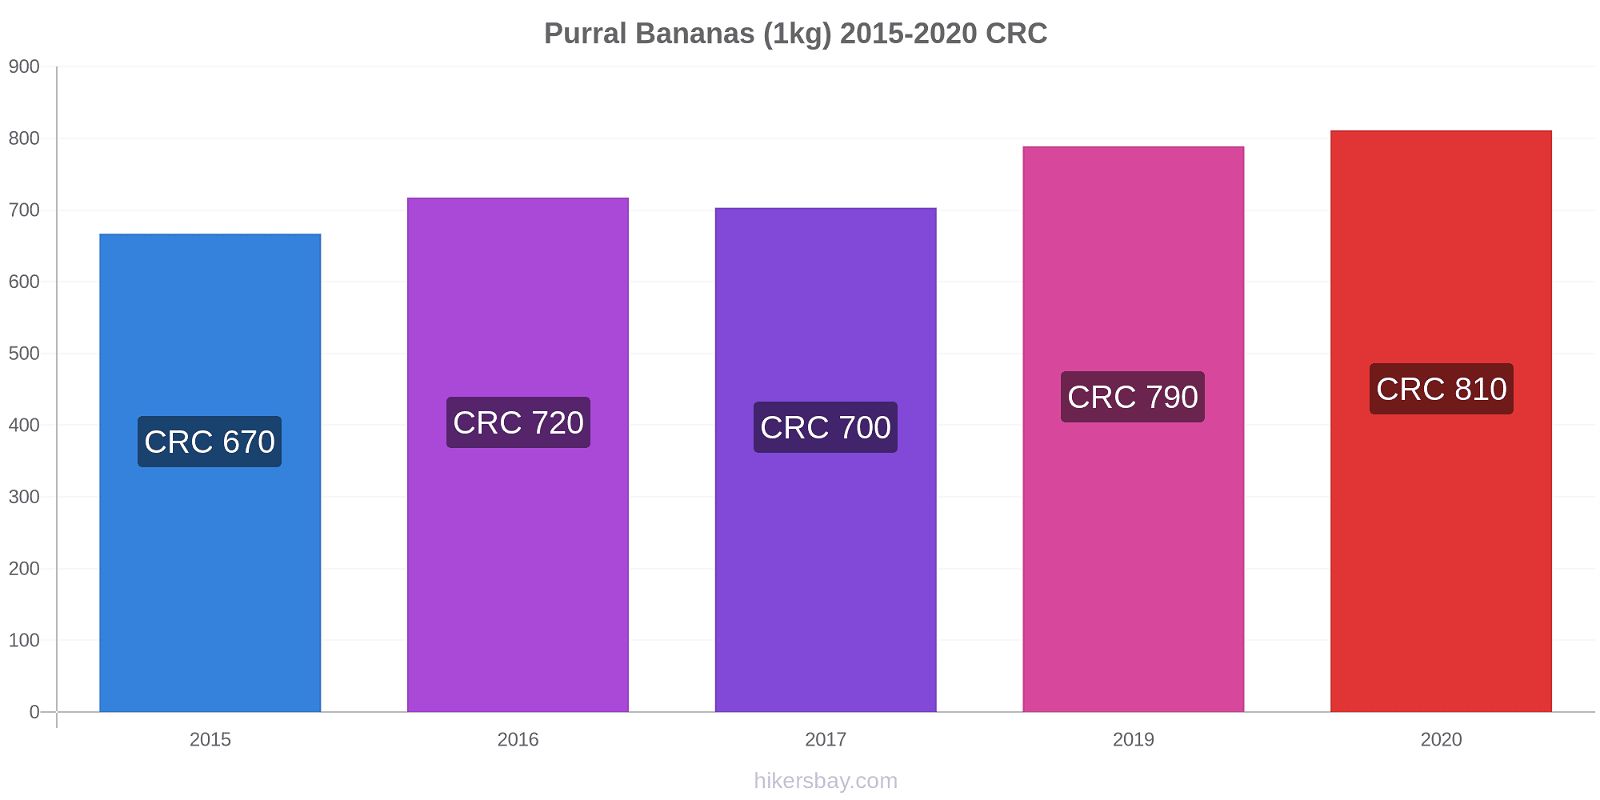 Purral variação de preço Banana (1kg) hikersbay.com